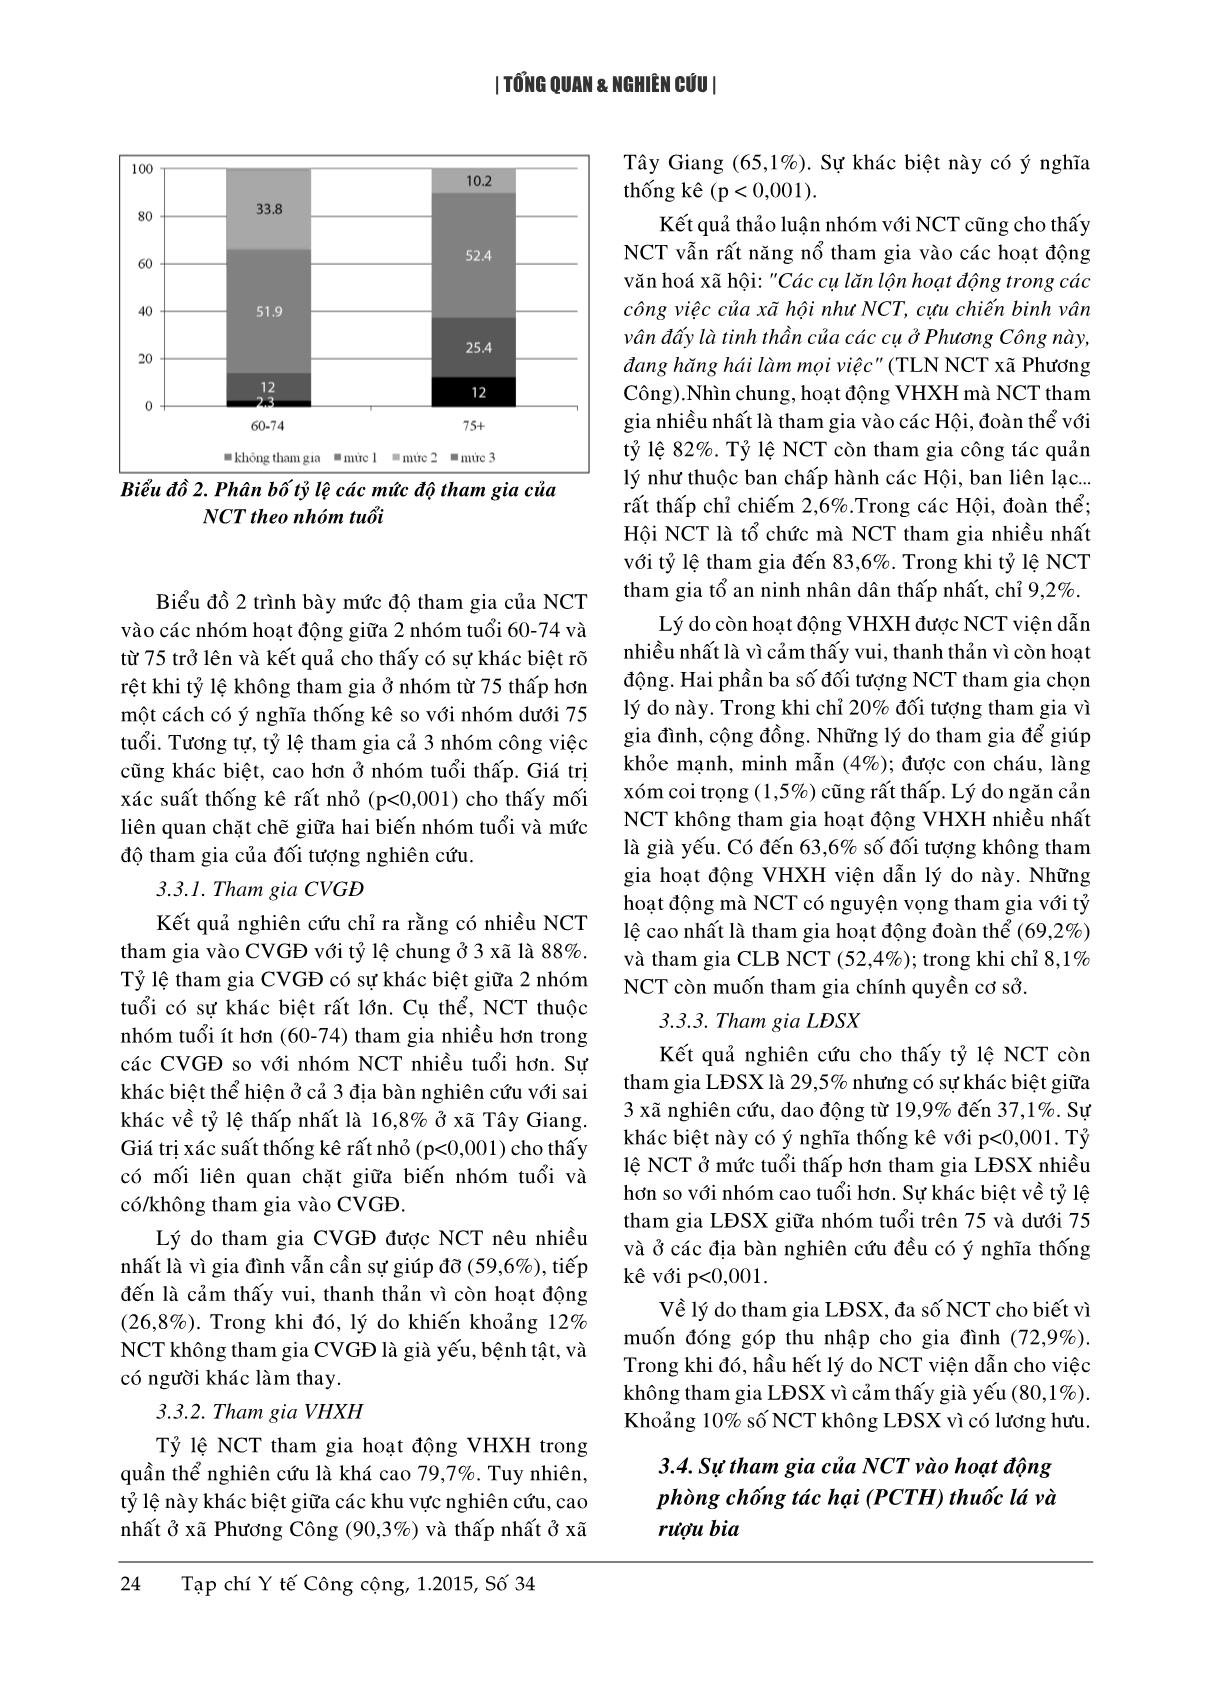 Đánh giá sức khoẻ và sự tham gia của người cao tuổi trong phát triển cộng đồng tại 3 xã của huyện Tiền Hải, tỉnh Thái Bình năm 2010 trang 5